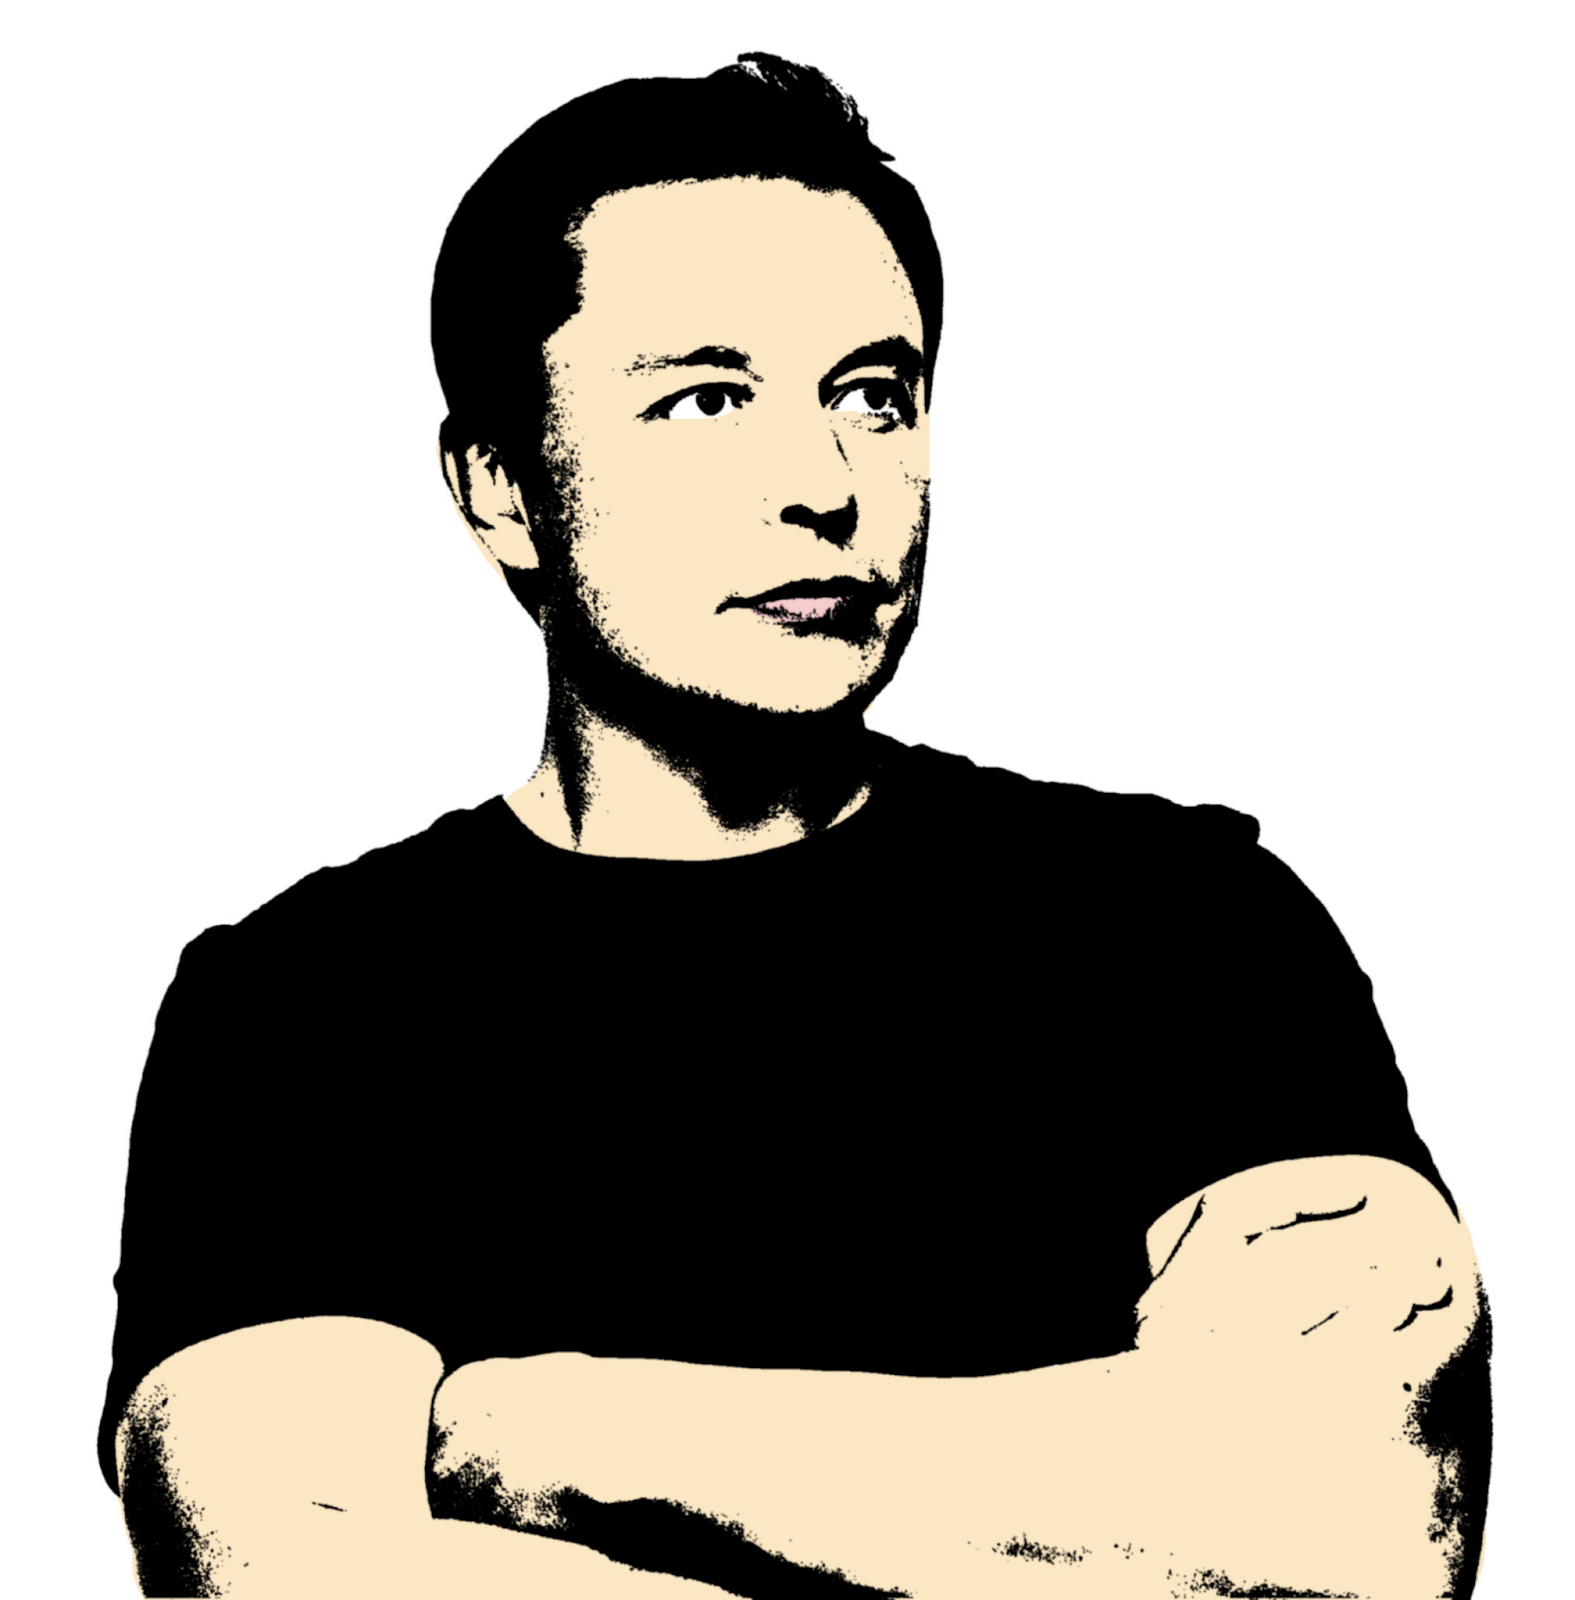 Pop Art illustration of Elon Musk